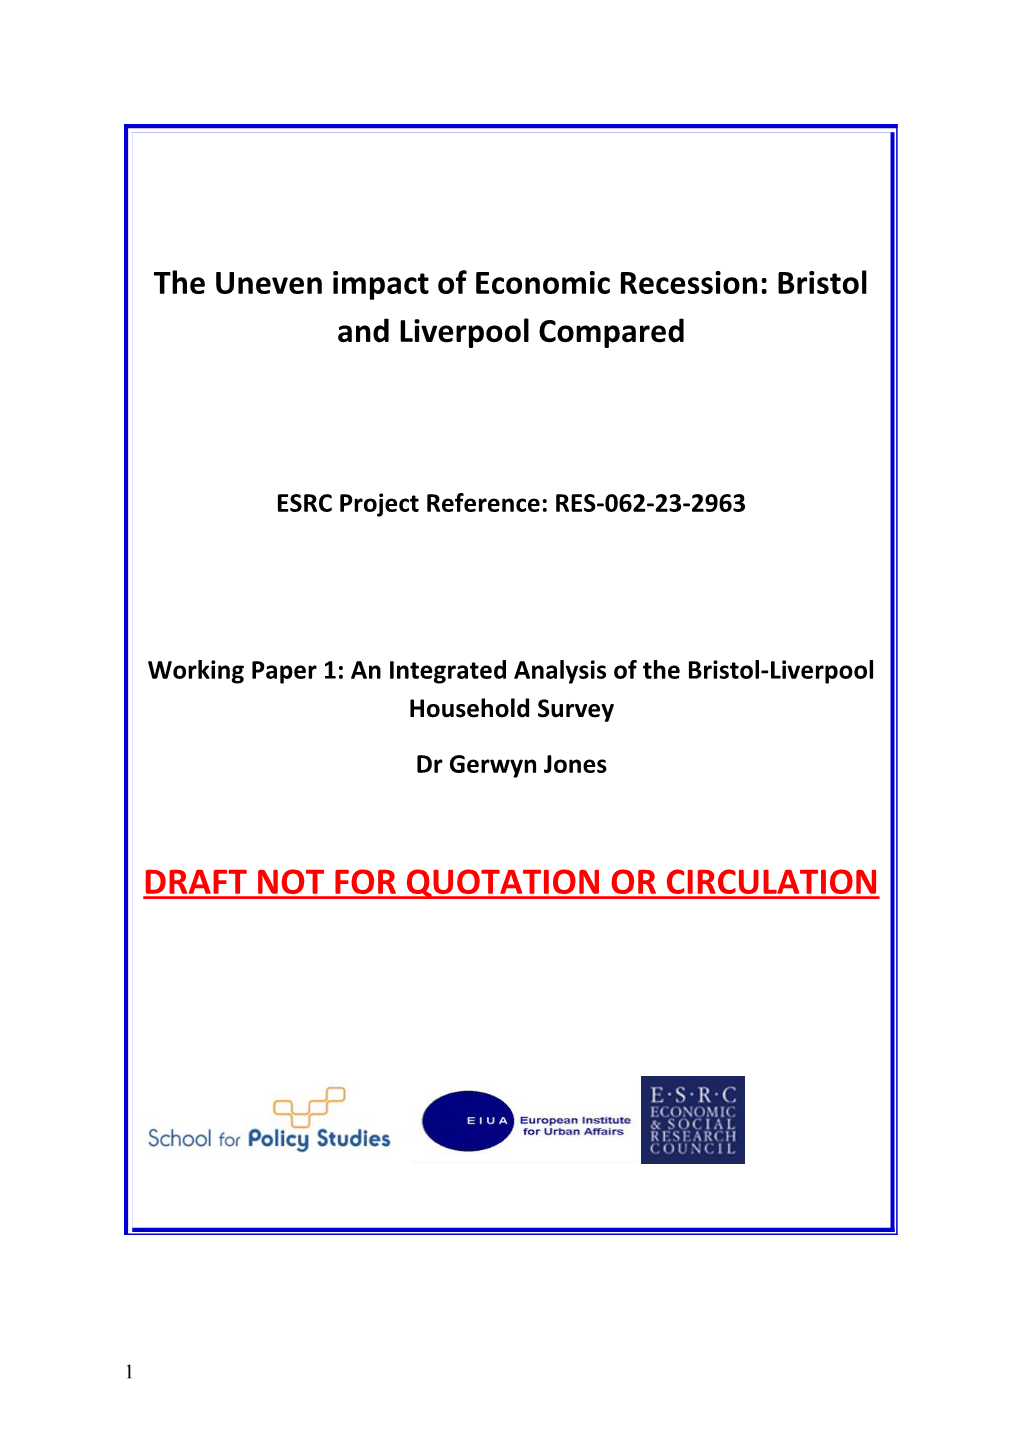 The Uneven Impact of Economic Recession: Bristol and Liverpool Compared